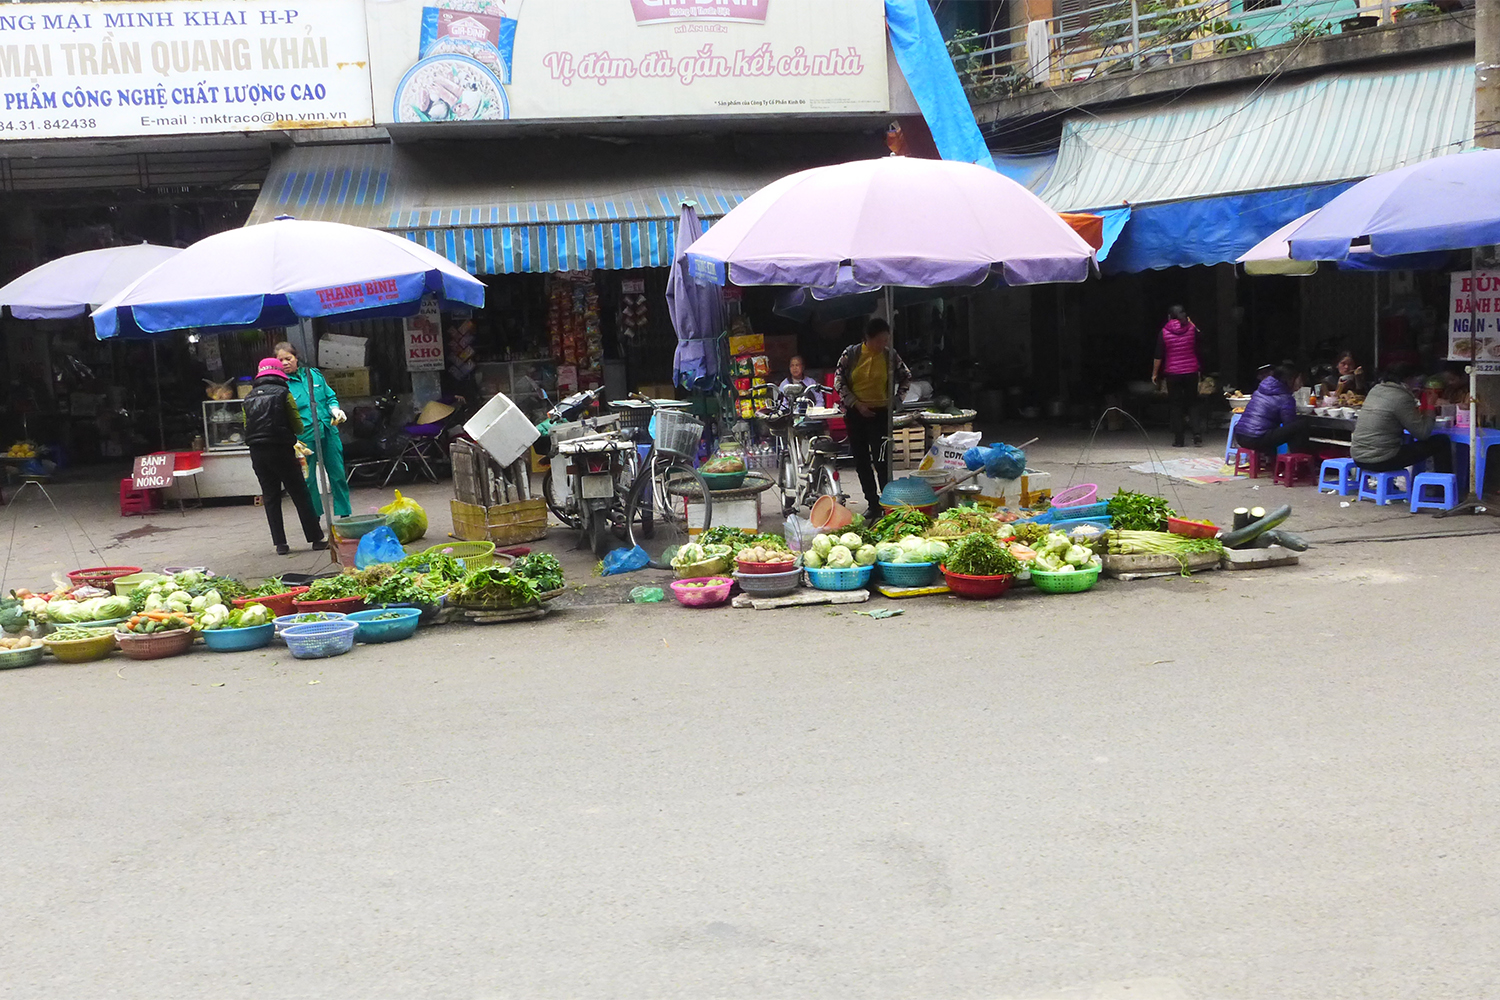 A Haiphong aussi, on retrouve des marchandes de rue !